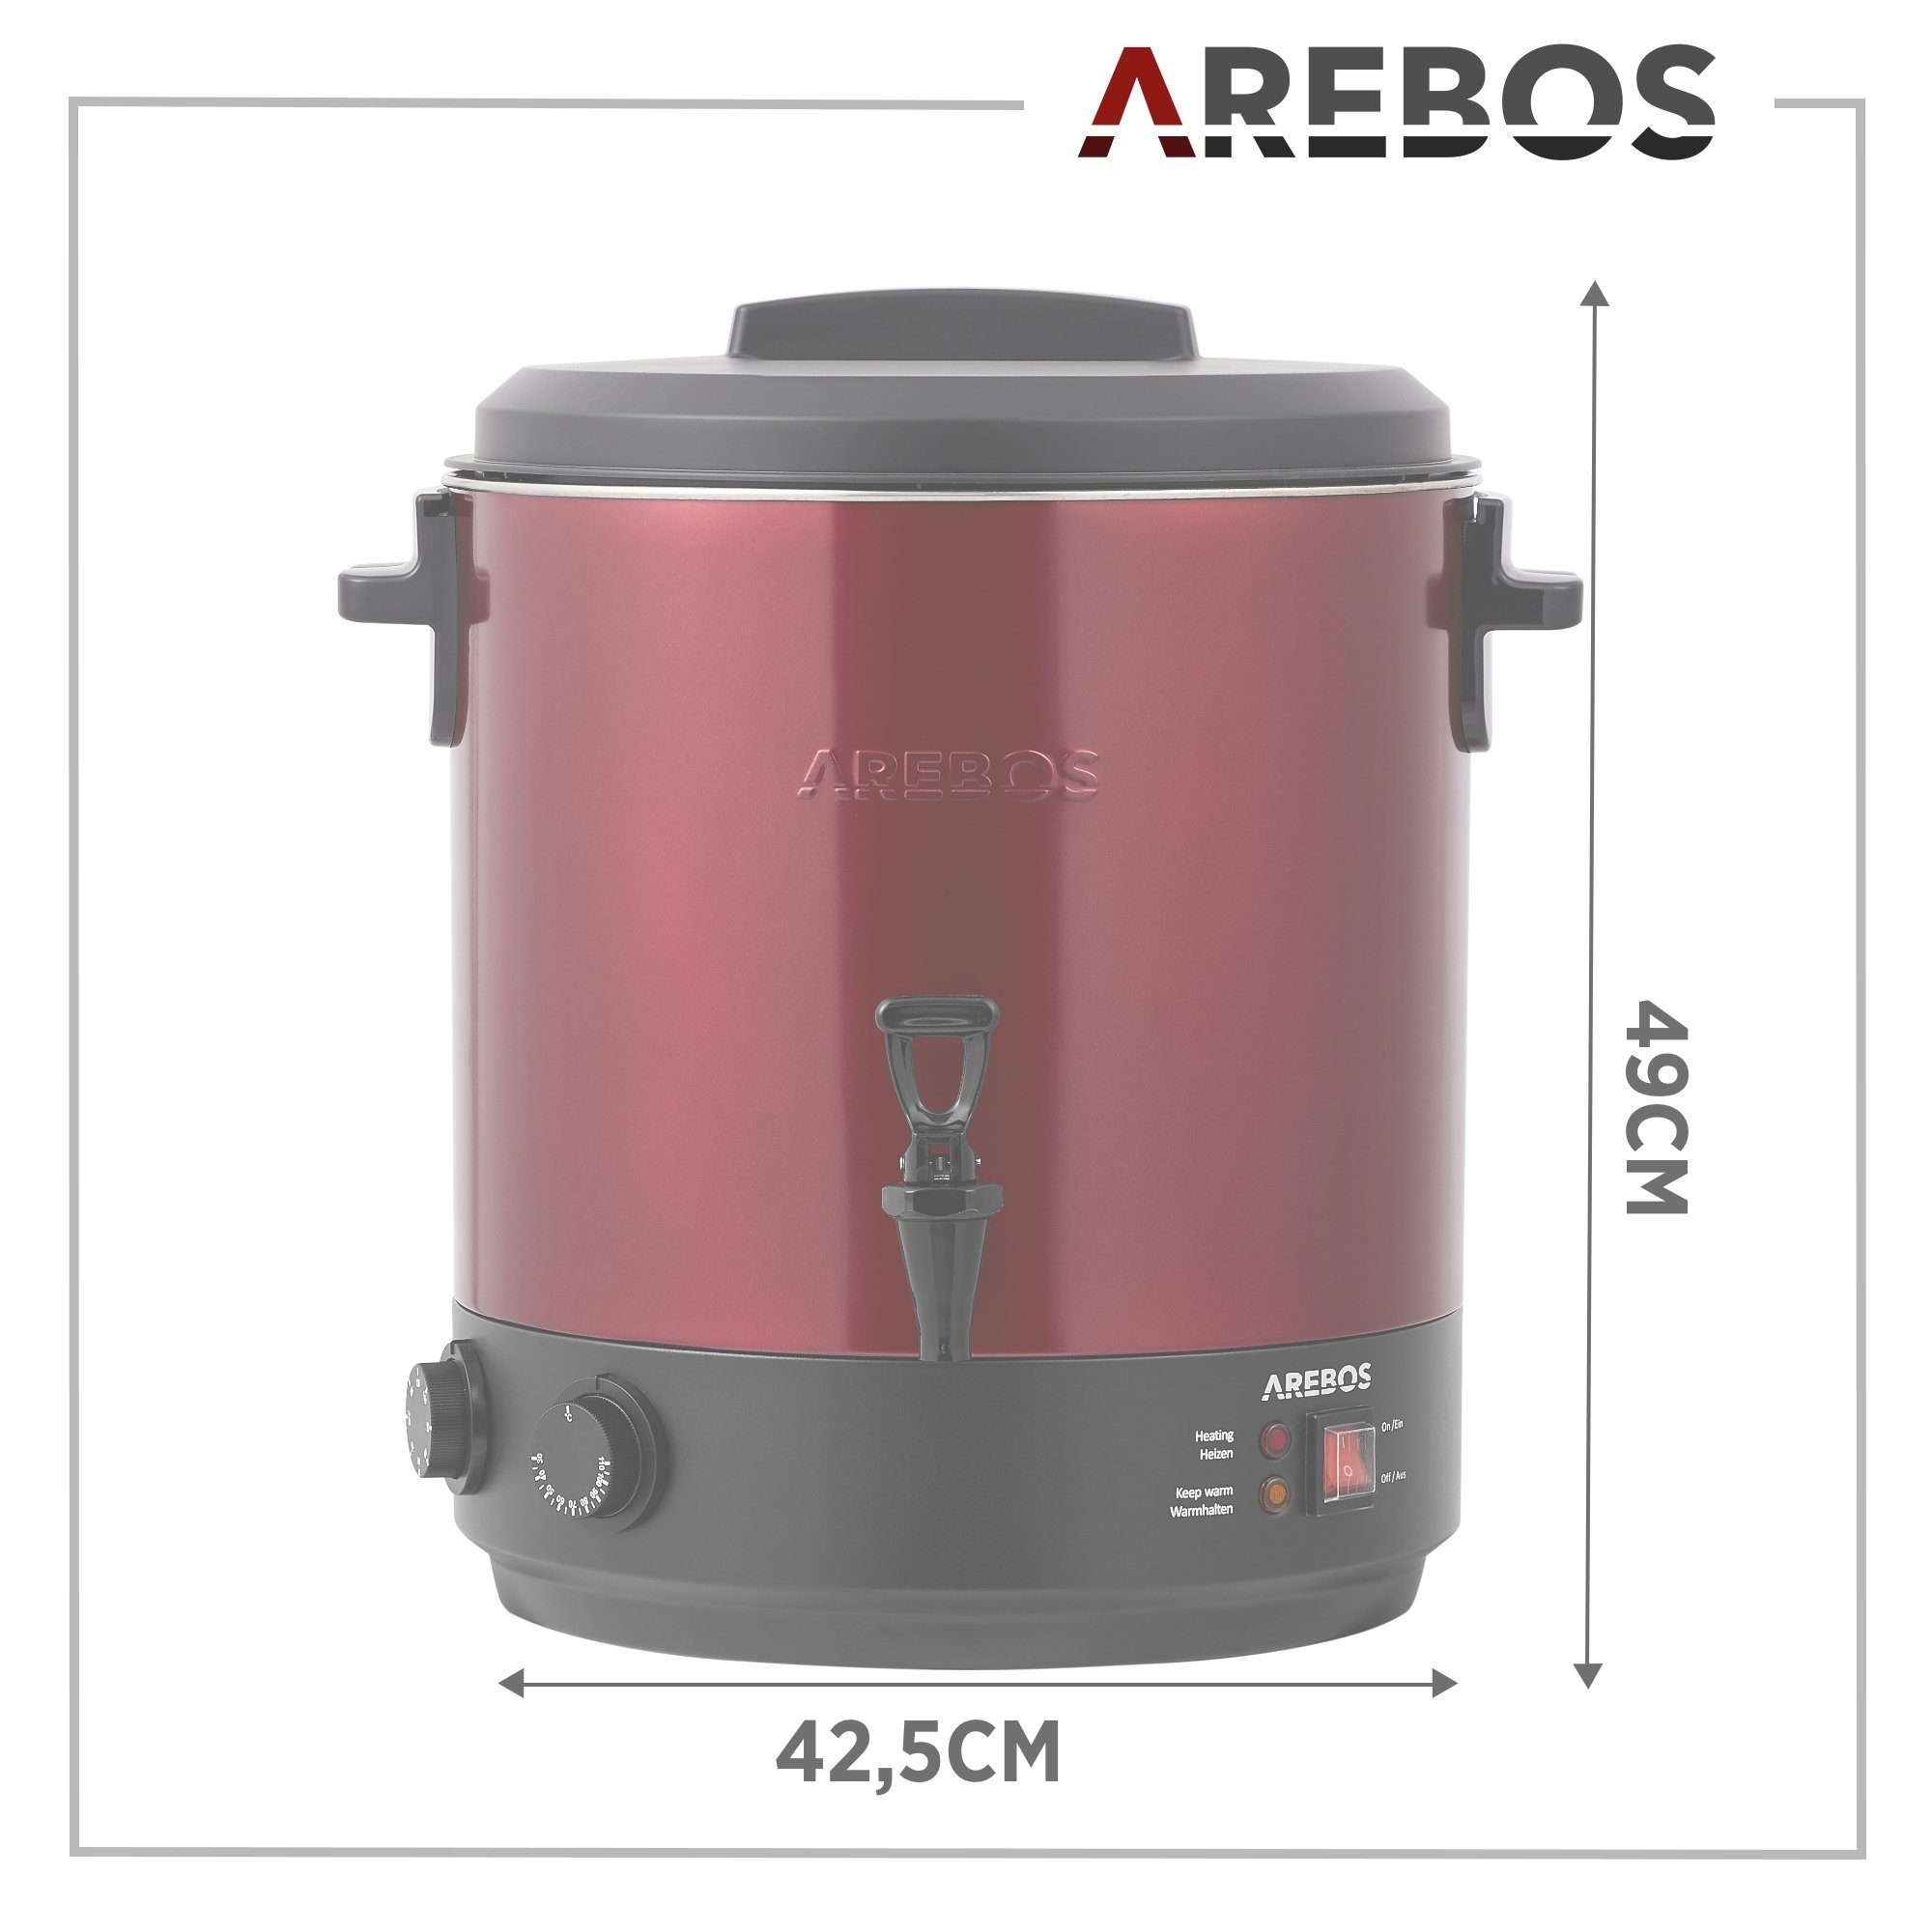 Arebos Einkoch- und Glühweinautomat L, 28 & 1800 Timerfunktion mit rot Timer,Thermostat Überhitzungsschutz, Einkochtopf W